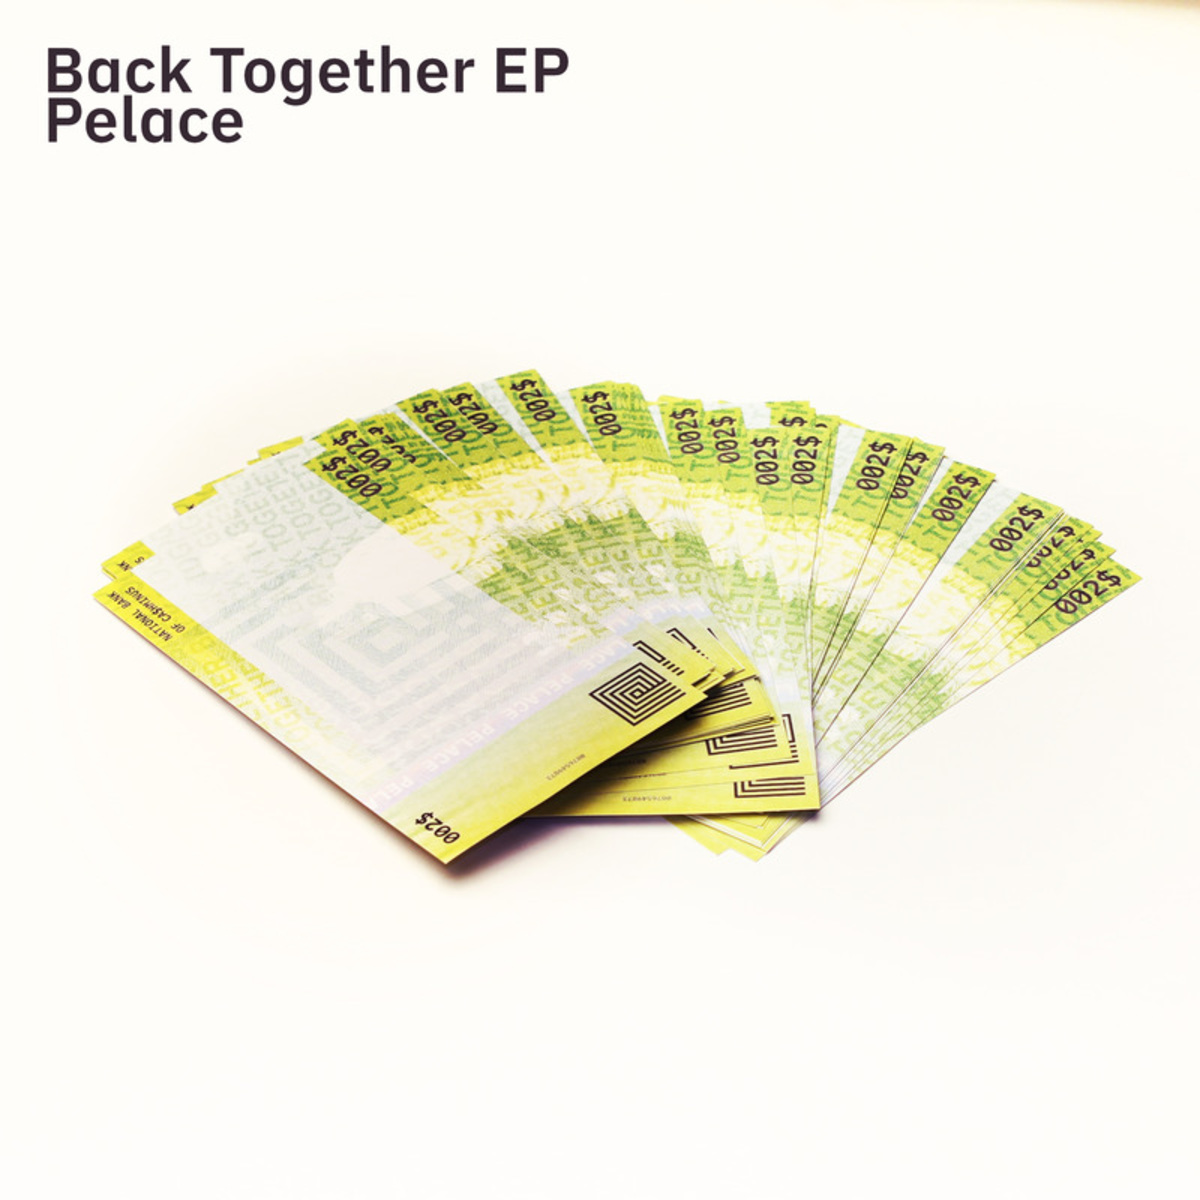 Pelace - Back Together EP / Cashminus